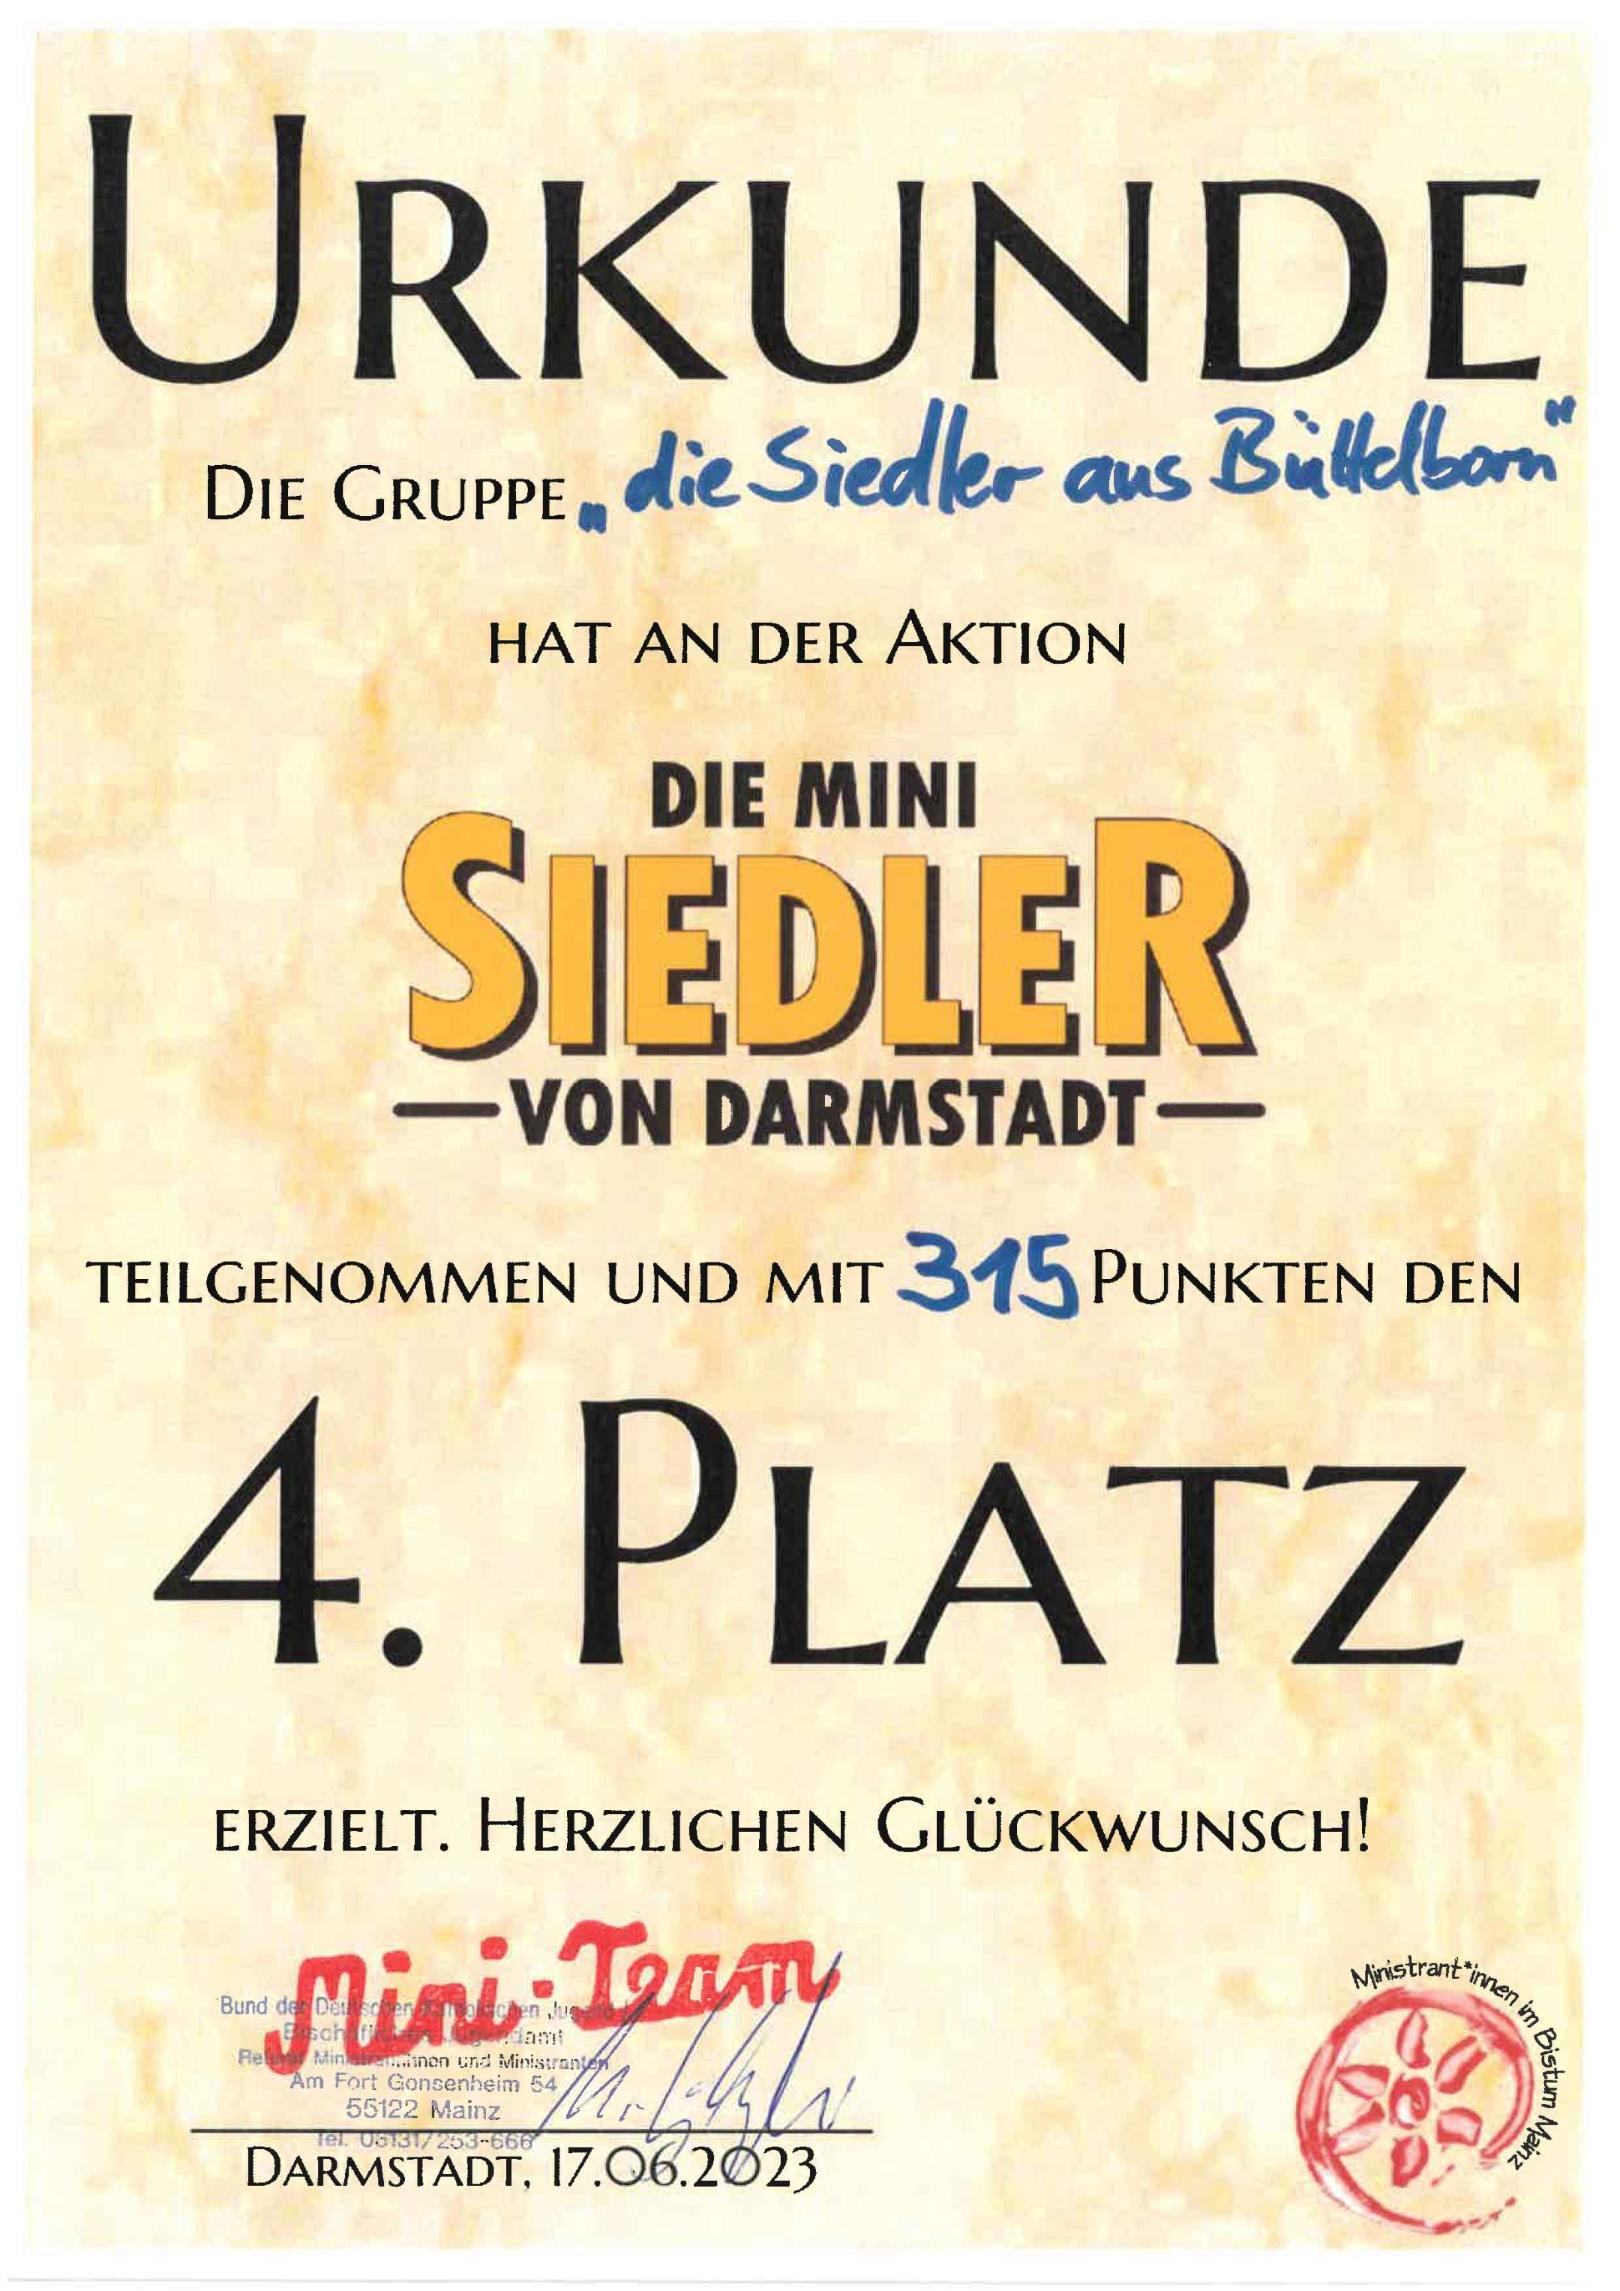 Siedler-Urkunde (c) Bistum Mainz